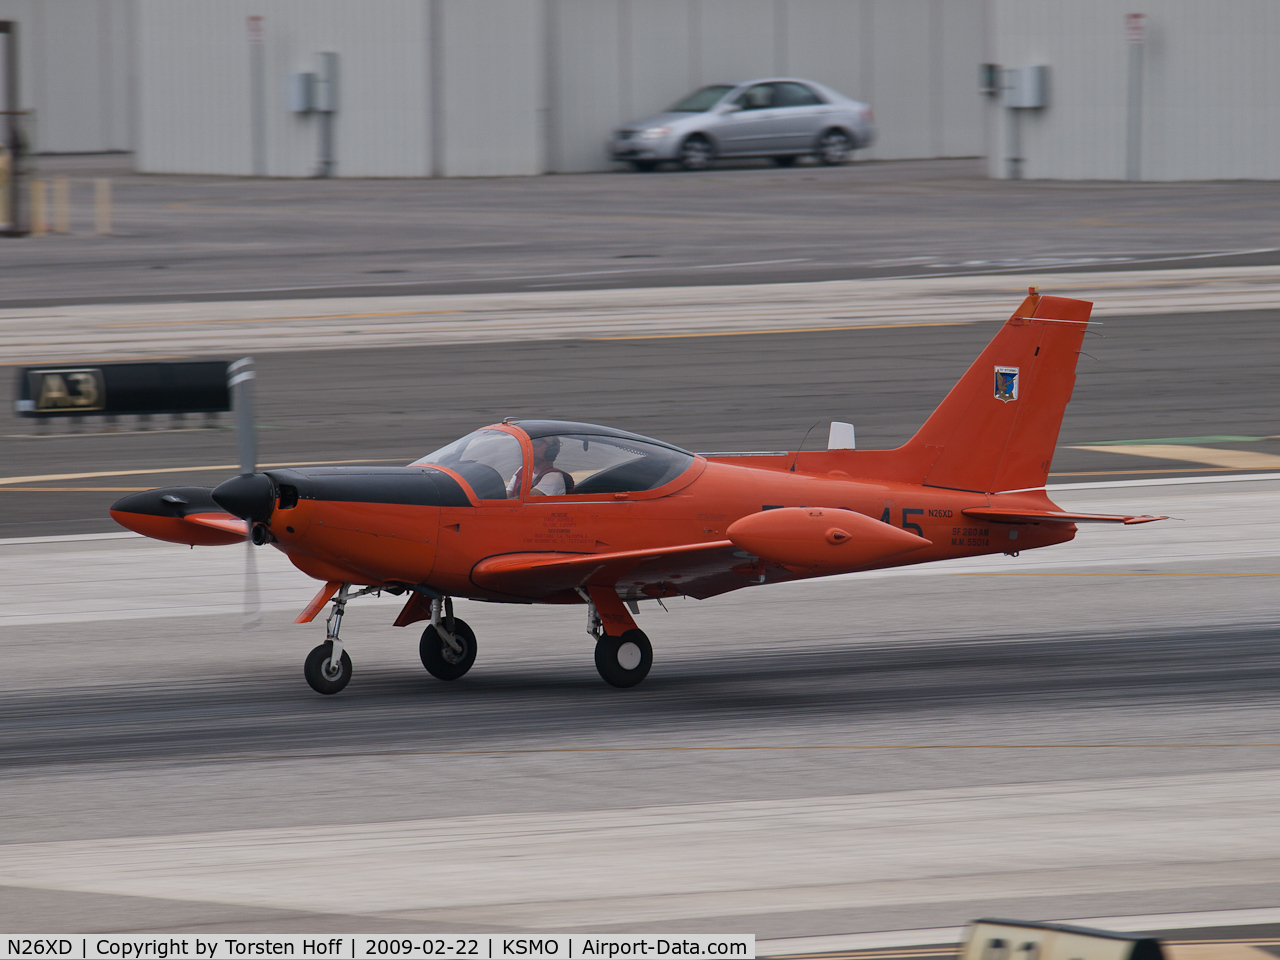 N26XD, 1987 SIAI-Marchetti F-260C C/N 40-016, N26XD arriving on RWY 21